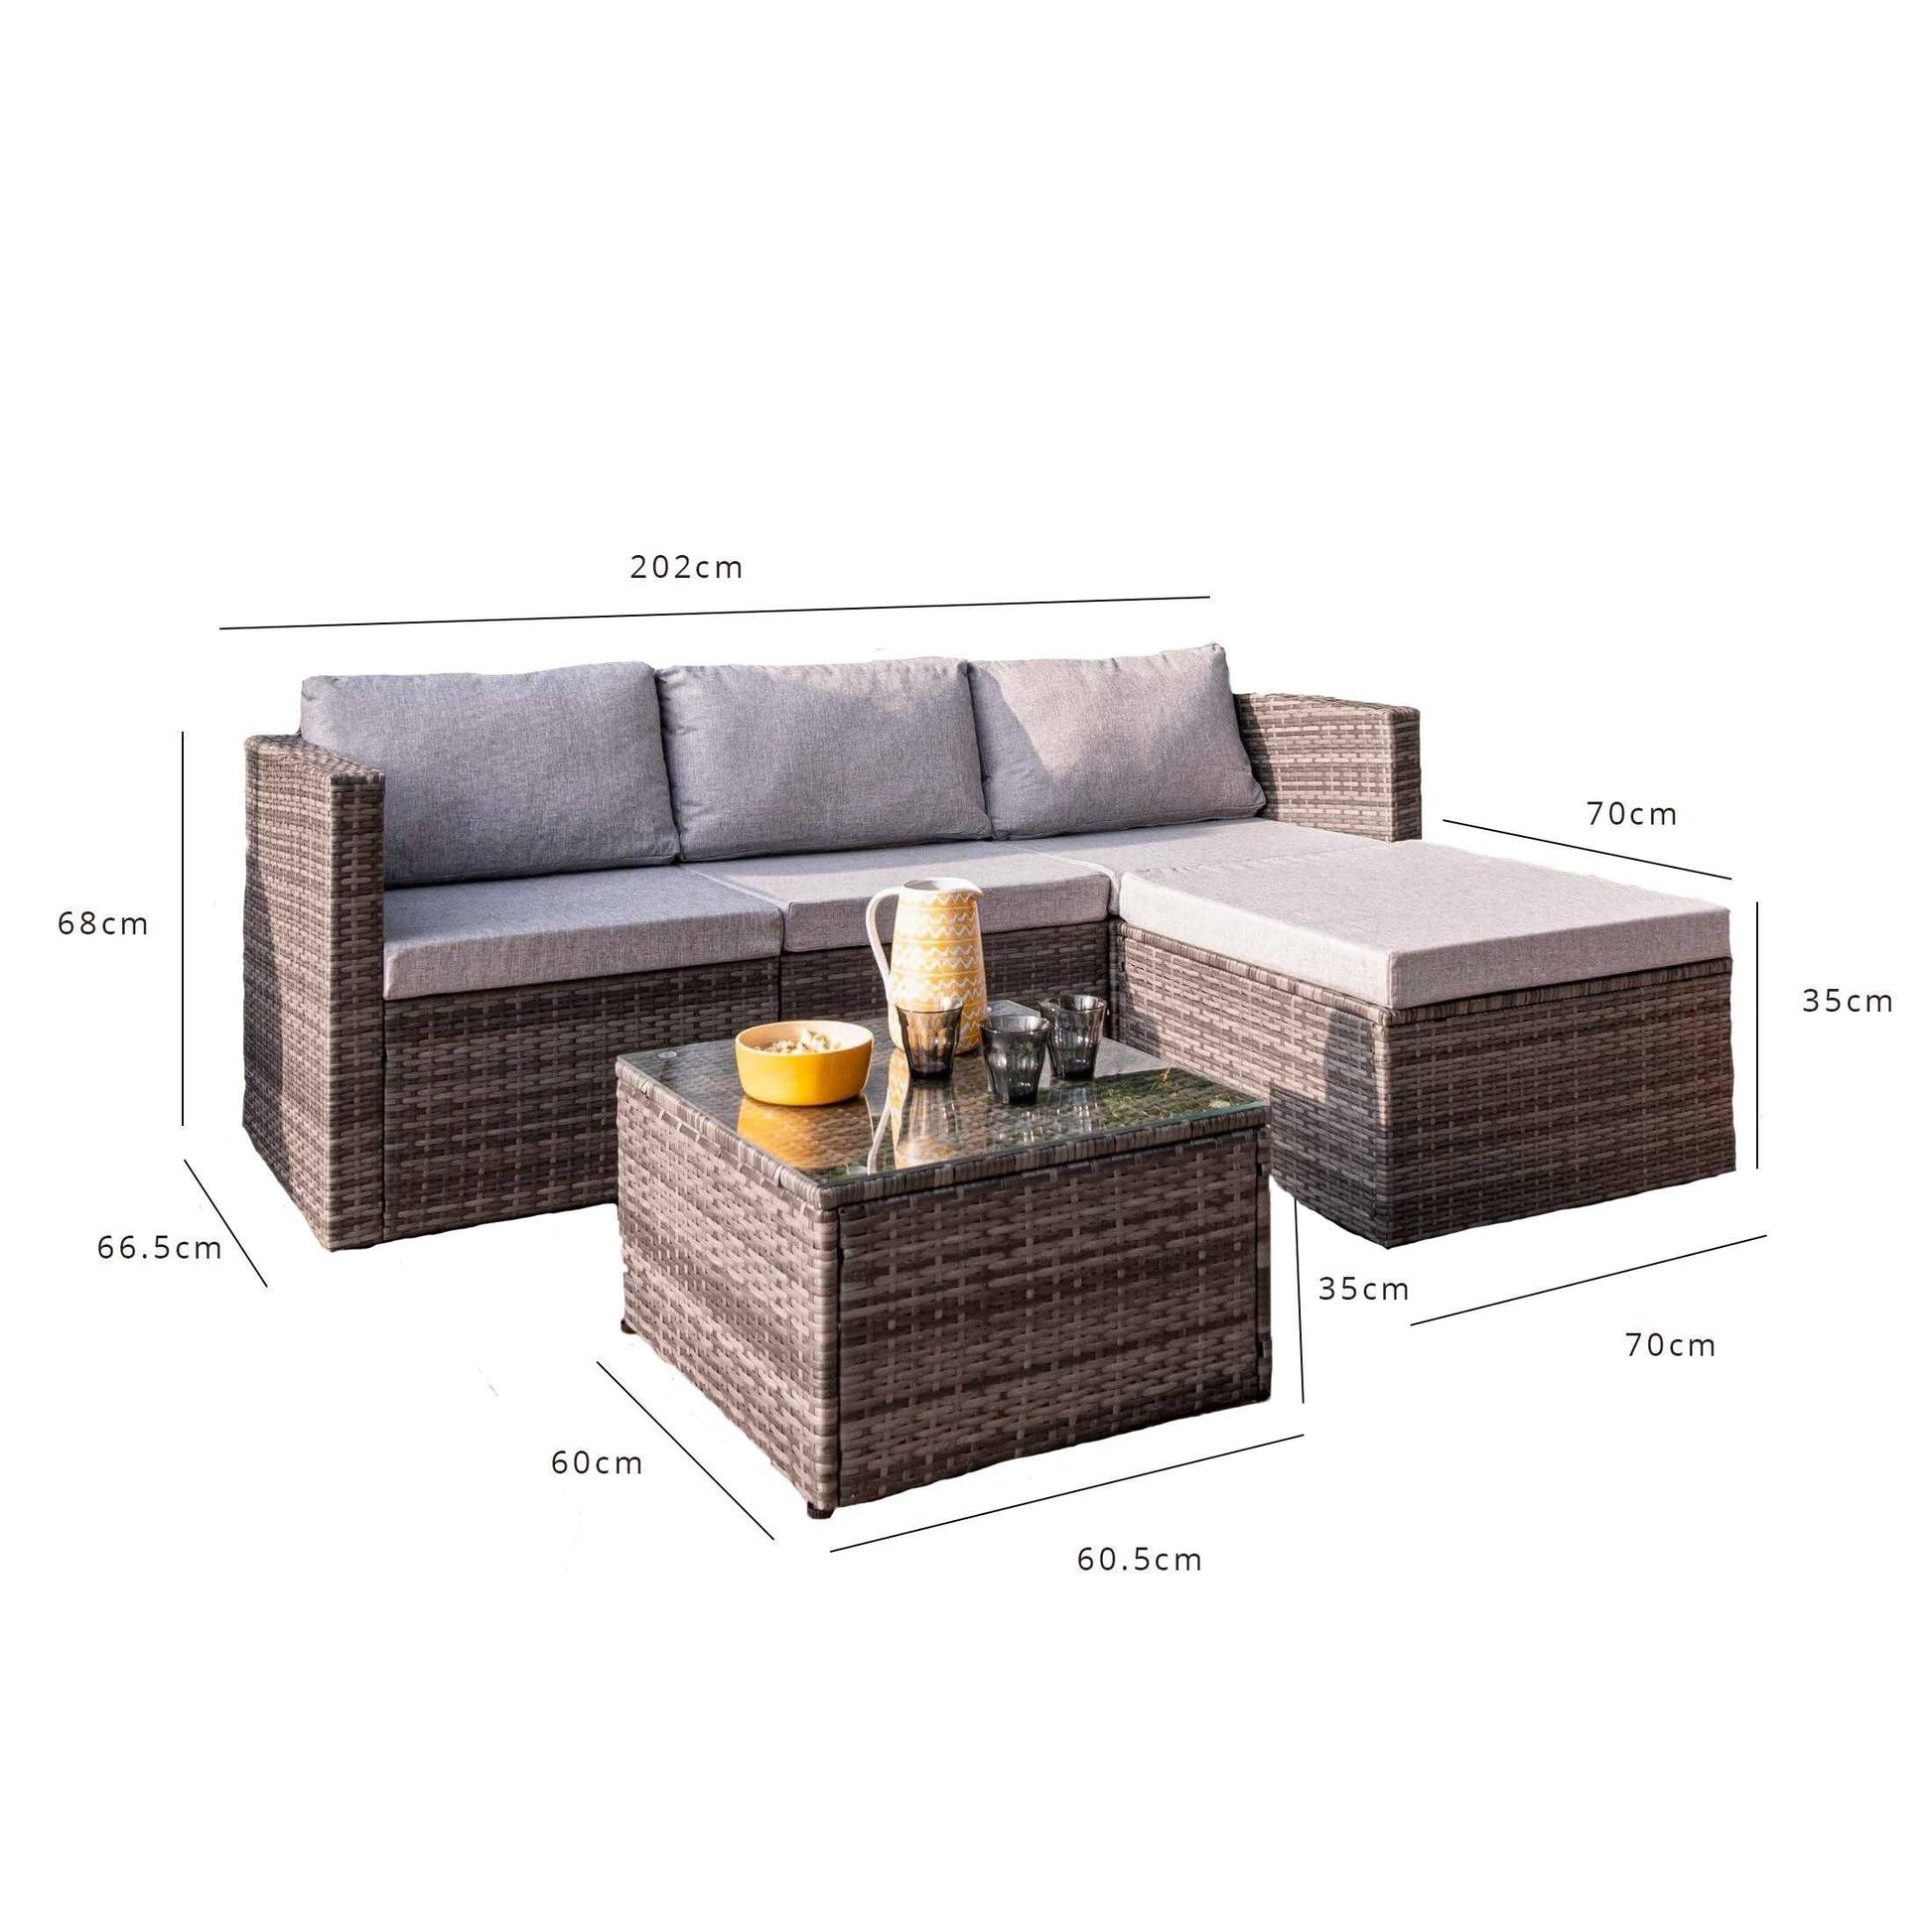 4 Seater Rattan Corner Sofa Set - Brown Weave - Laura James